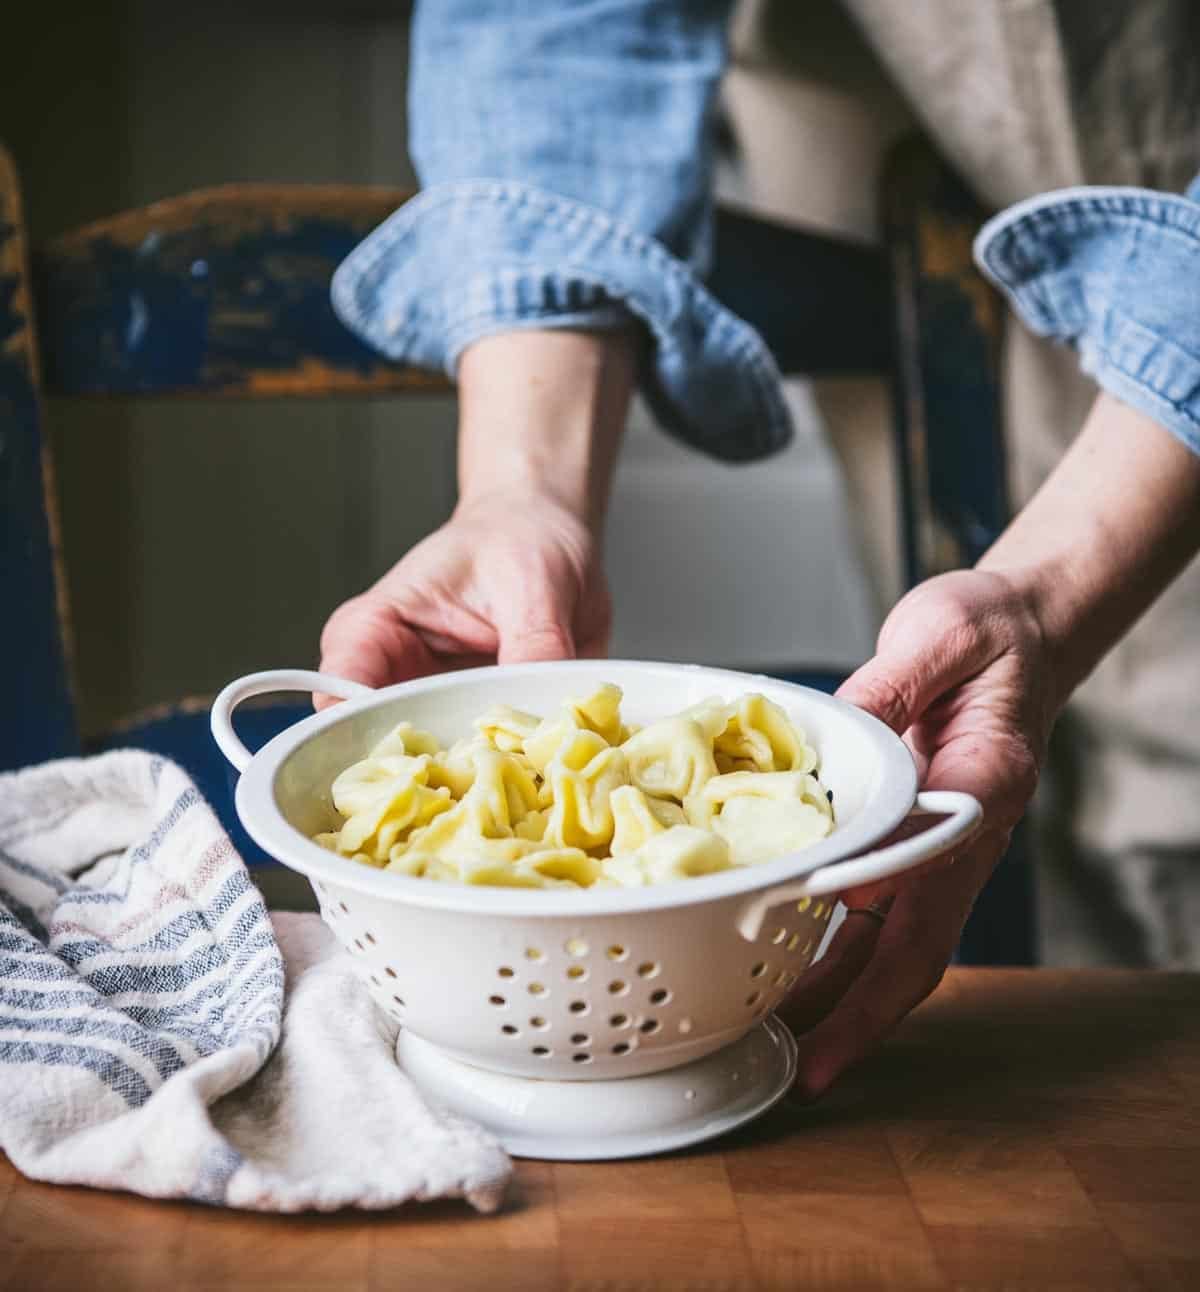 Draining tortellini pasta in a colander.